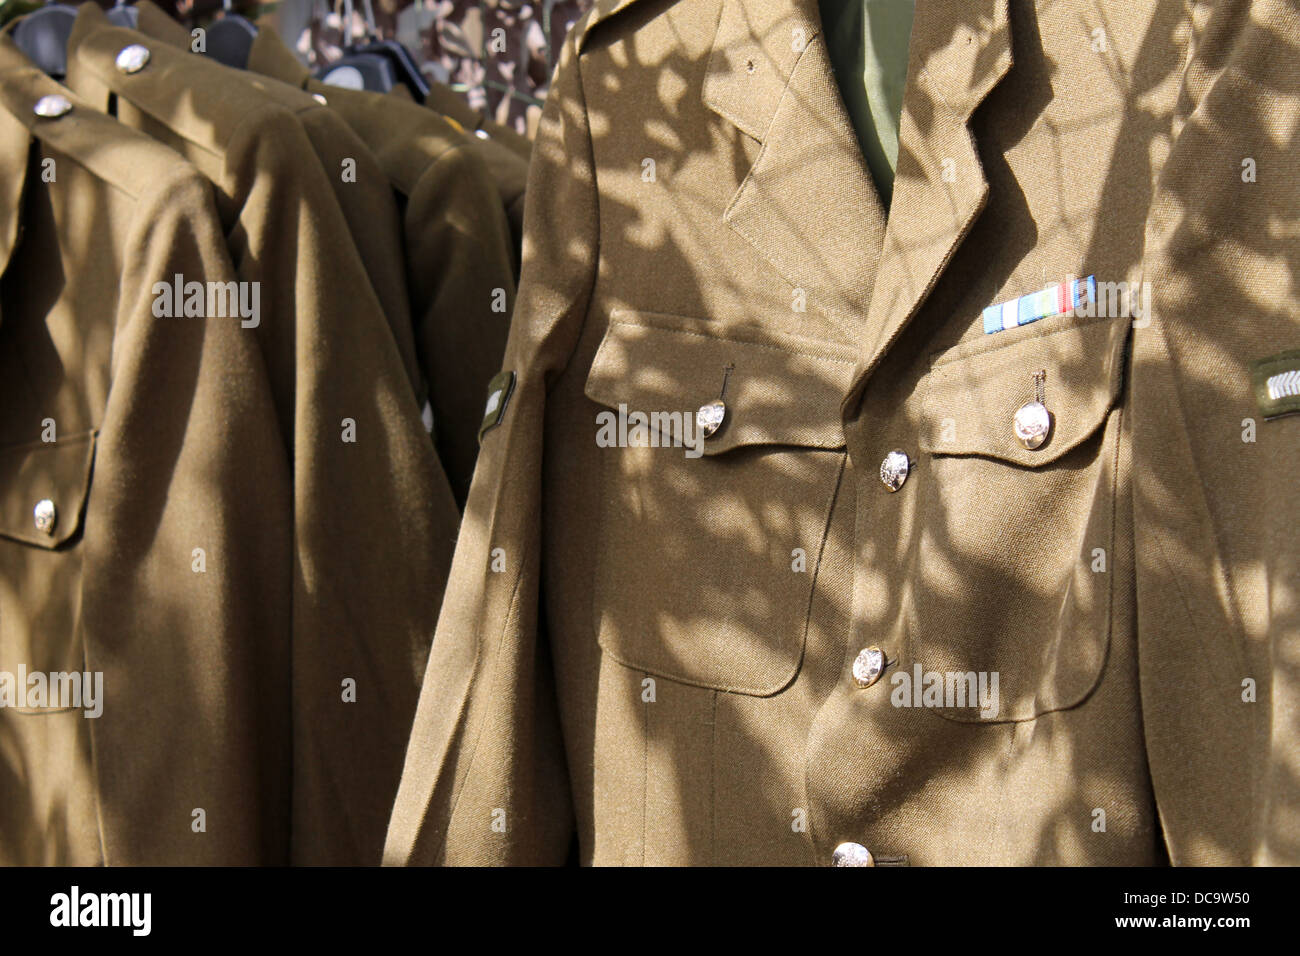 Esercito britannico uniforme militare per la vendita sul mercato in stallo. Foto Stock